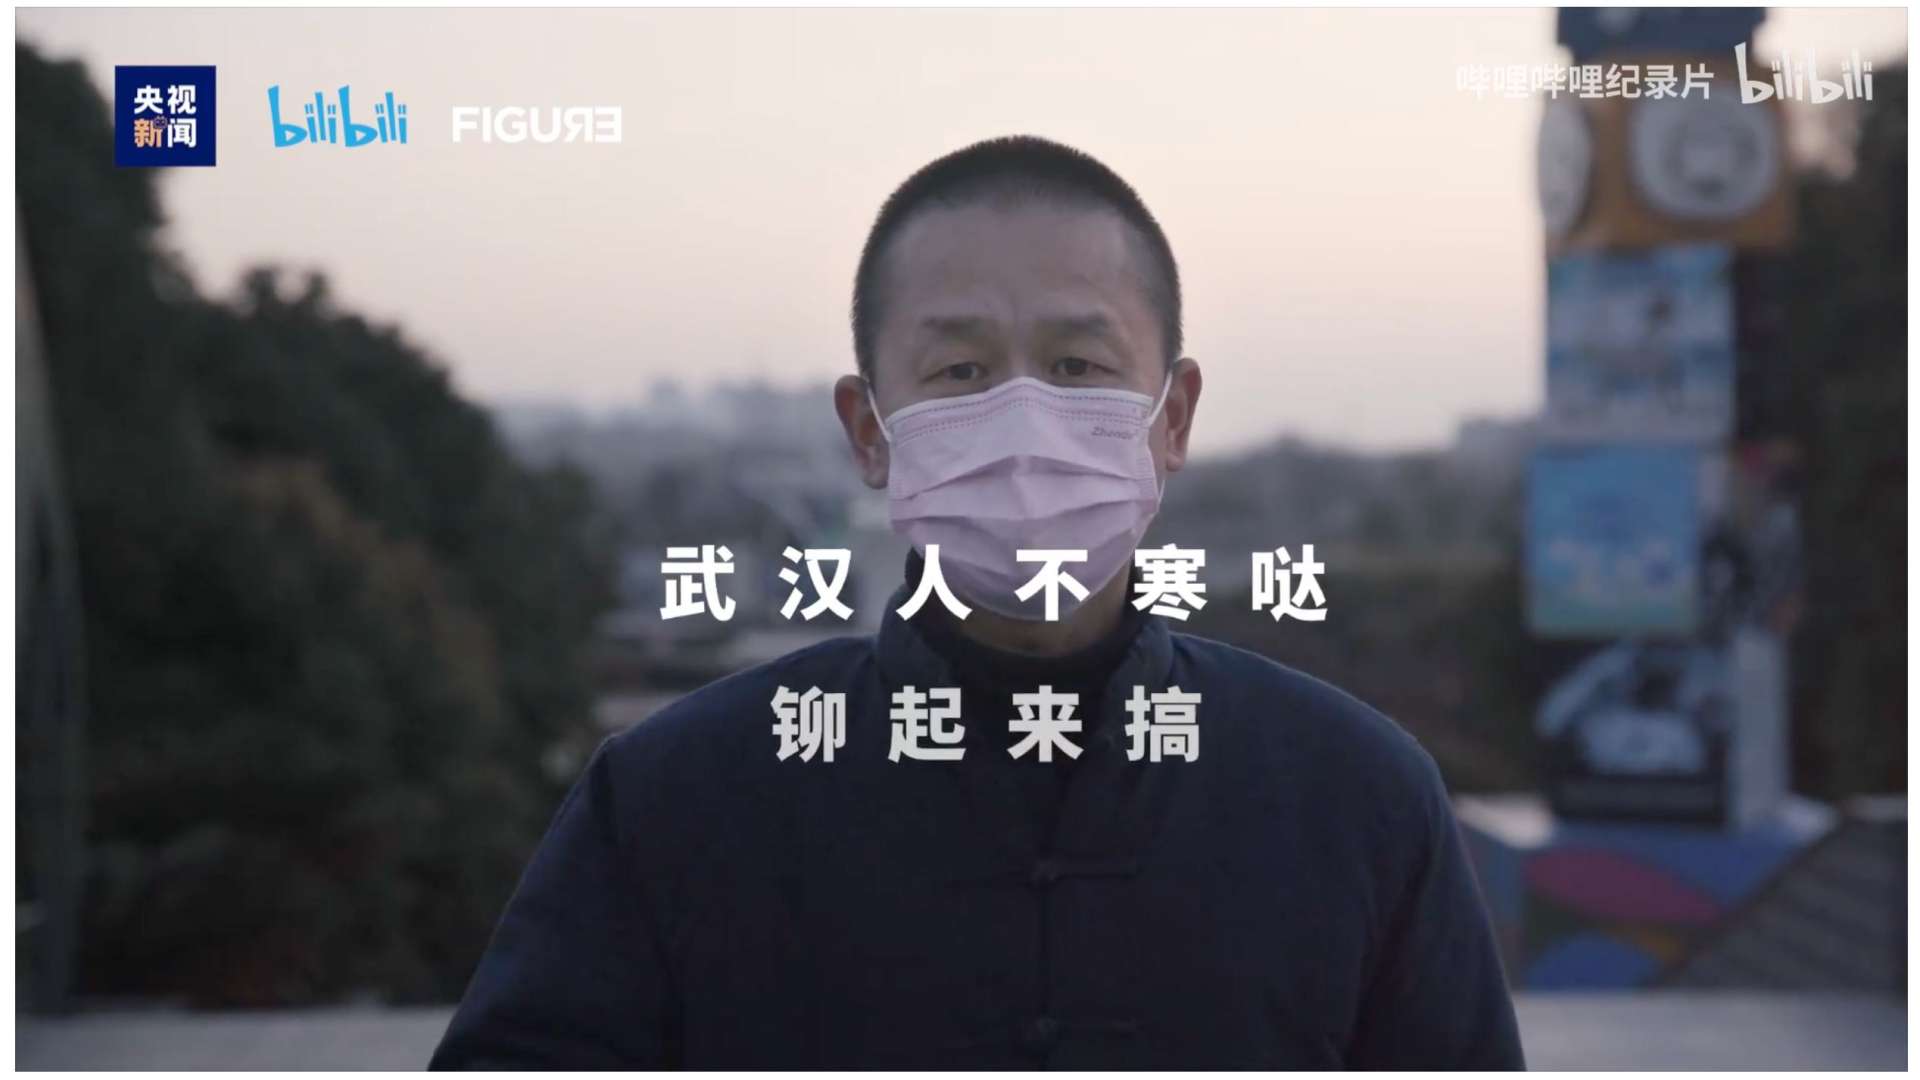 bilibili疫情纪录片《在武汉》总宣传片